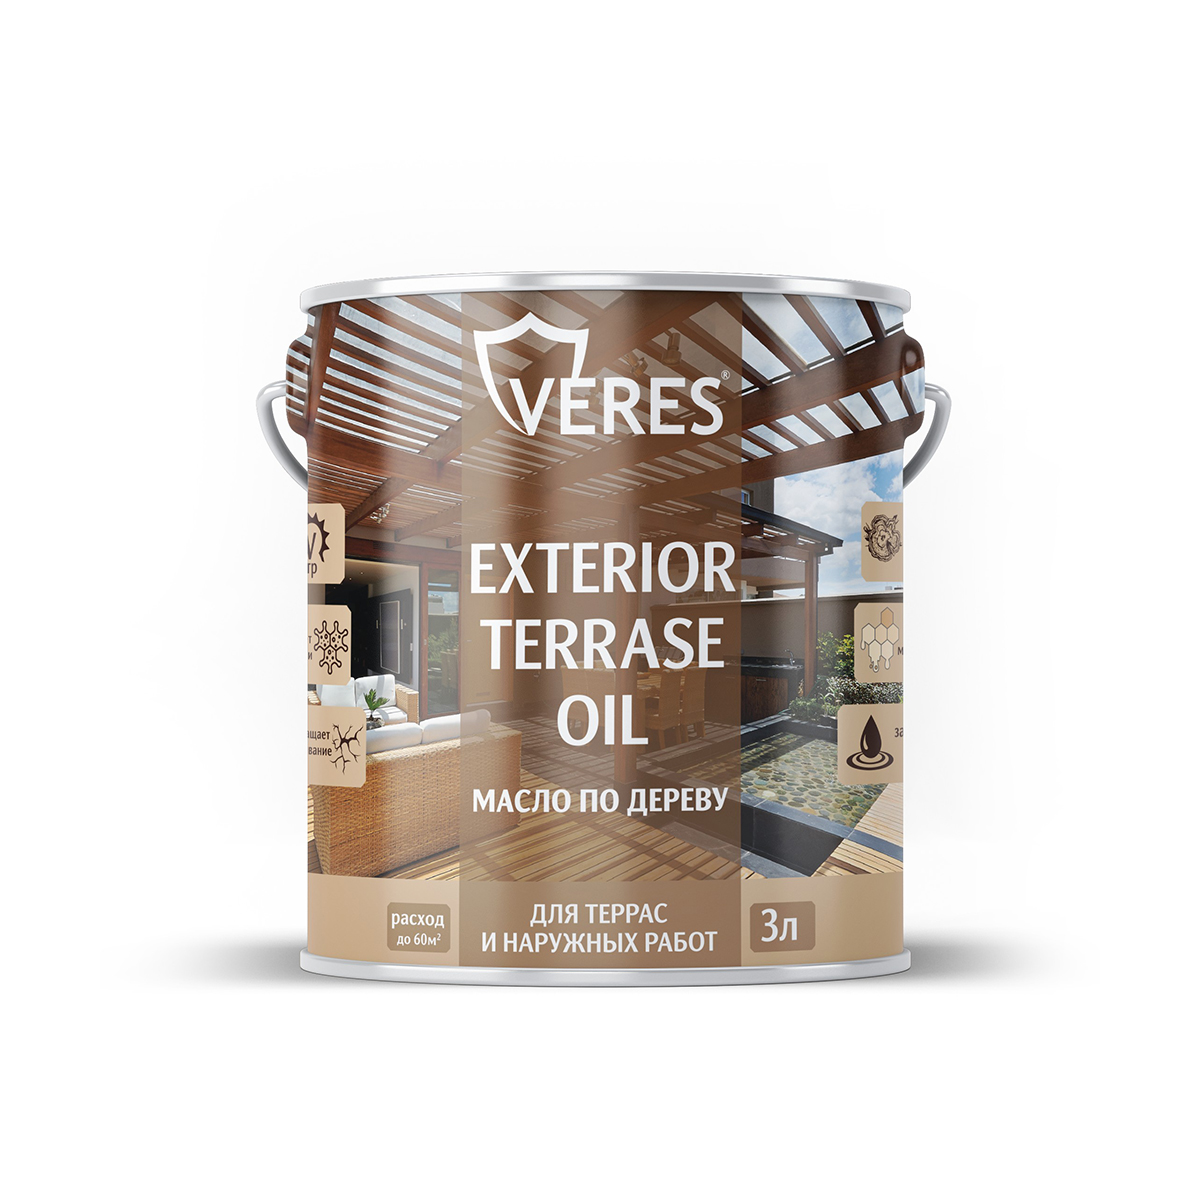 Масло для дерева Veres Exterior Terrase Oil, 3 л, бесцветное - купить в Москве, цены на Мегамаркет